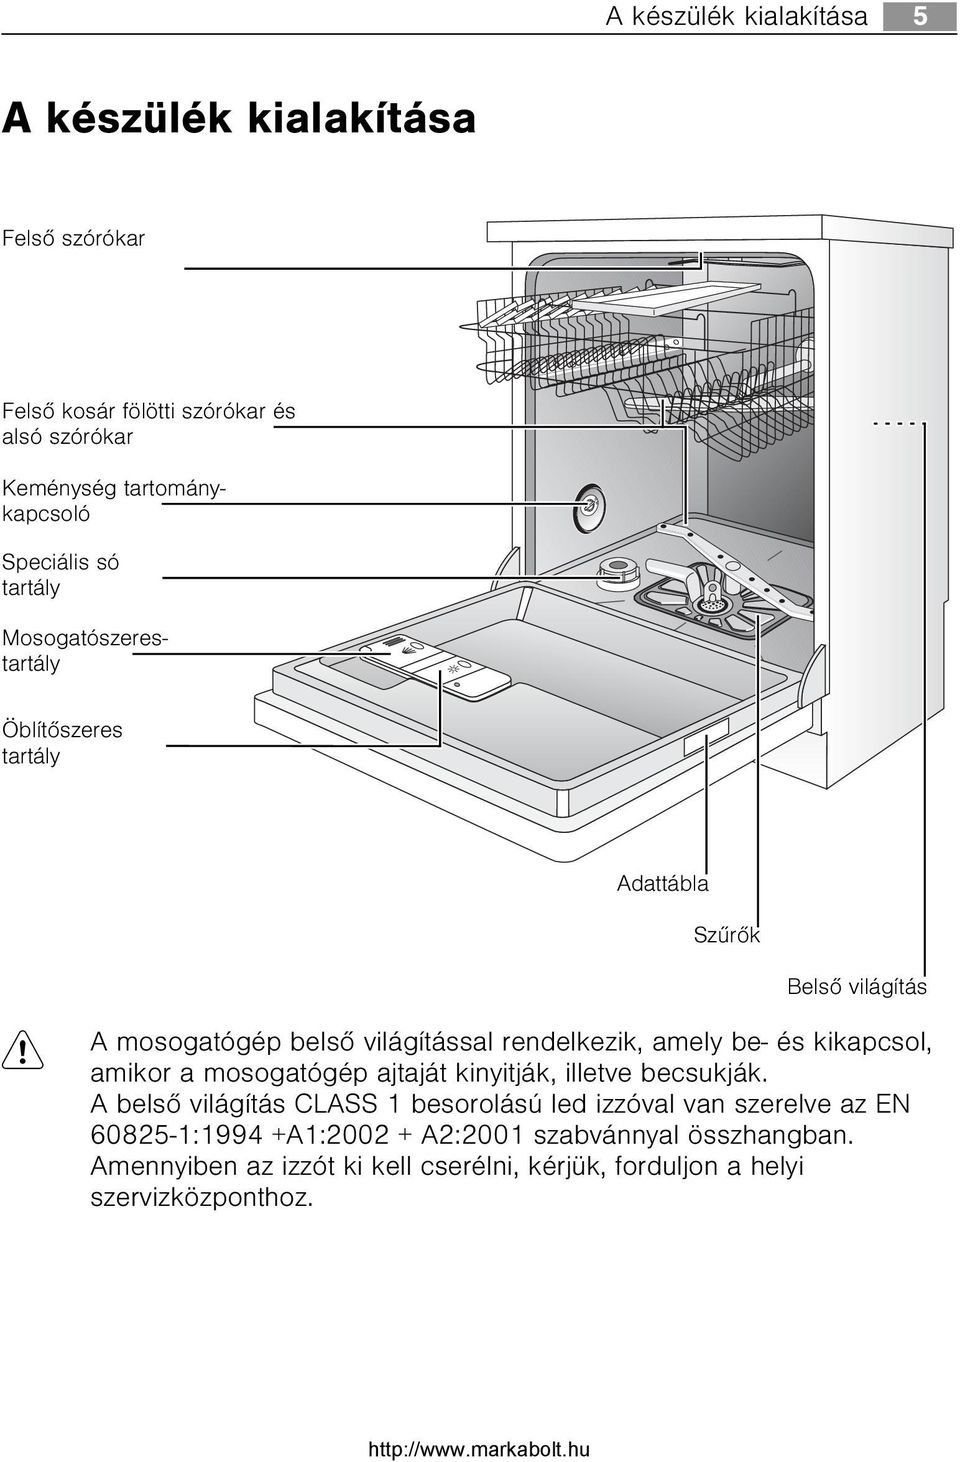 FAVORIT Automata mosogatógép. Használati útmutató. - PDF Free Download